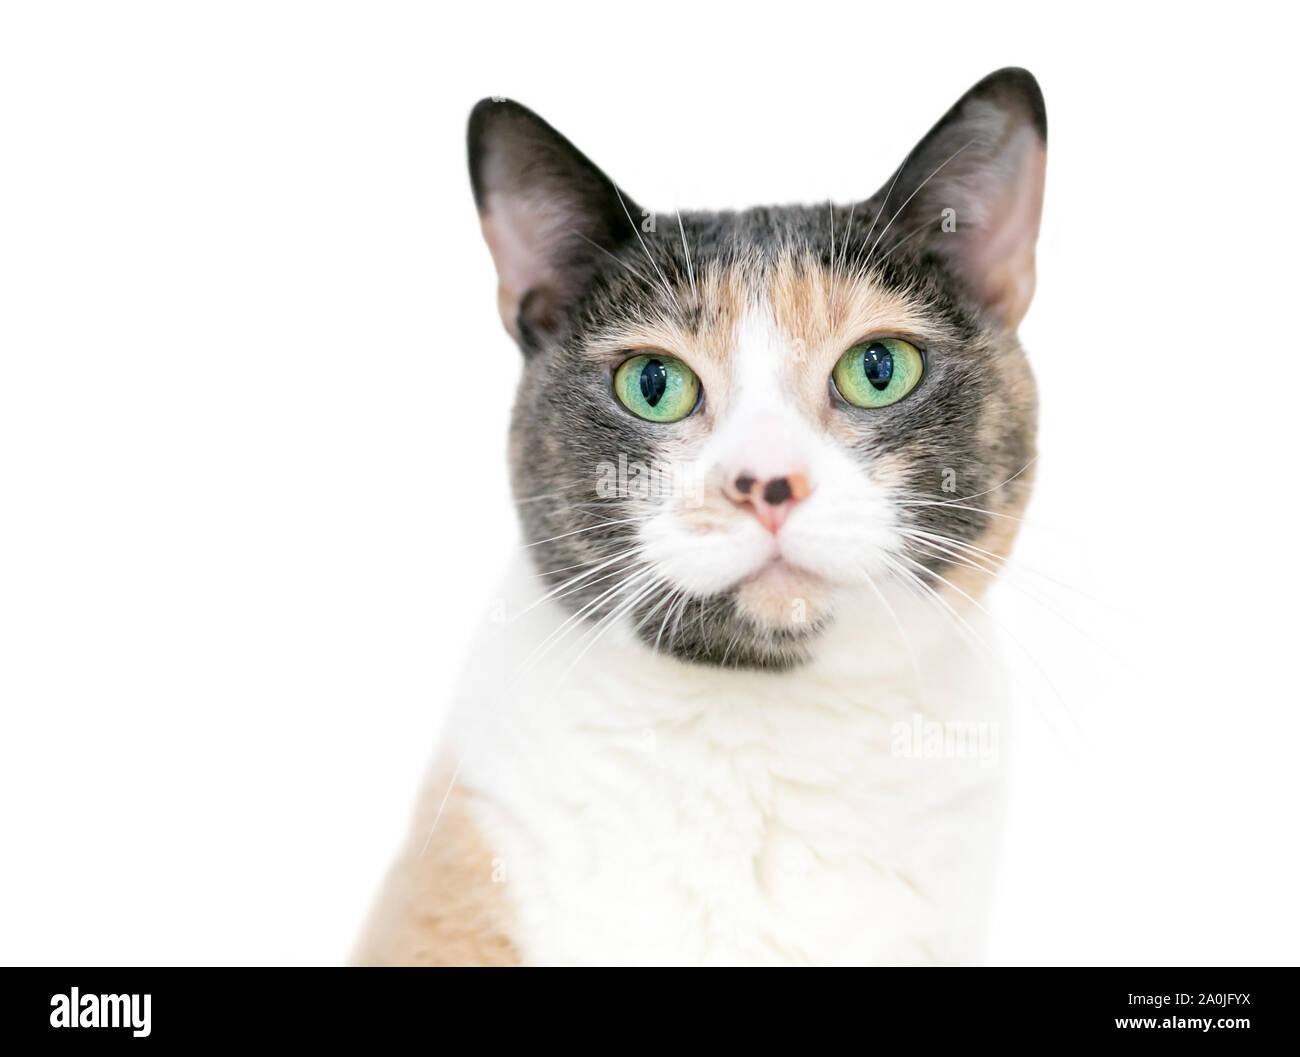 Diluer un poil intérieur Calico cat avec brillants yeux verts Banque D'Images